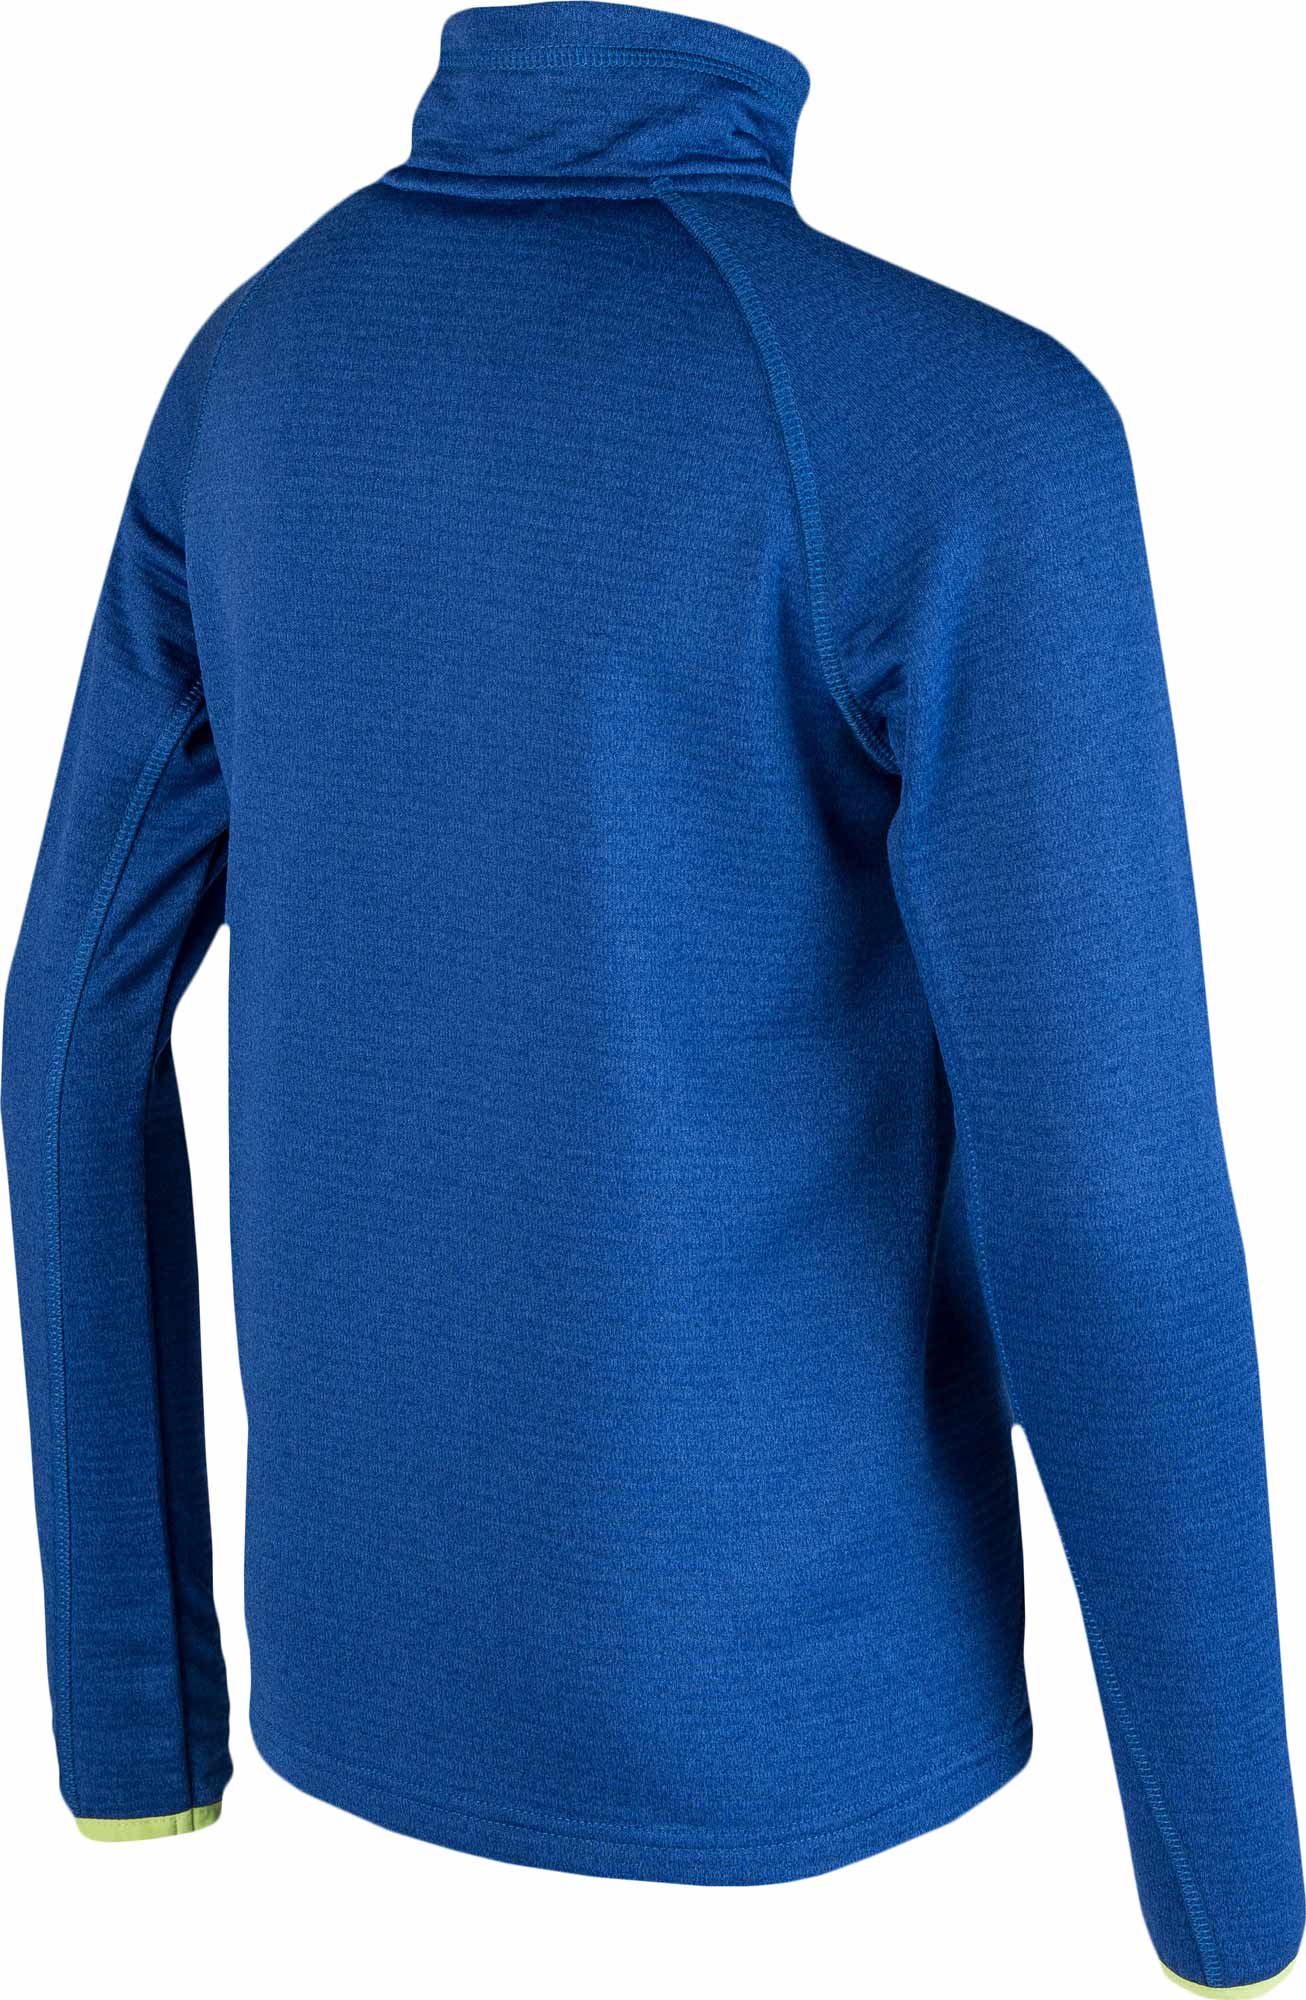 Children’s fleece sweatshirt